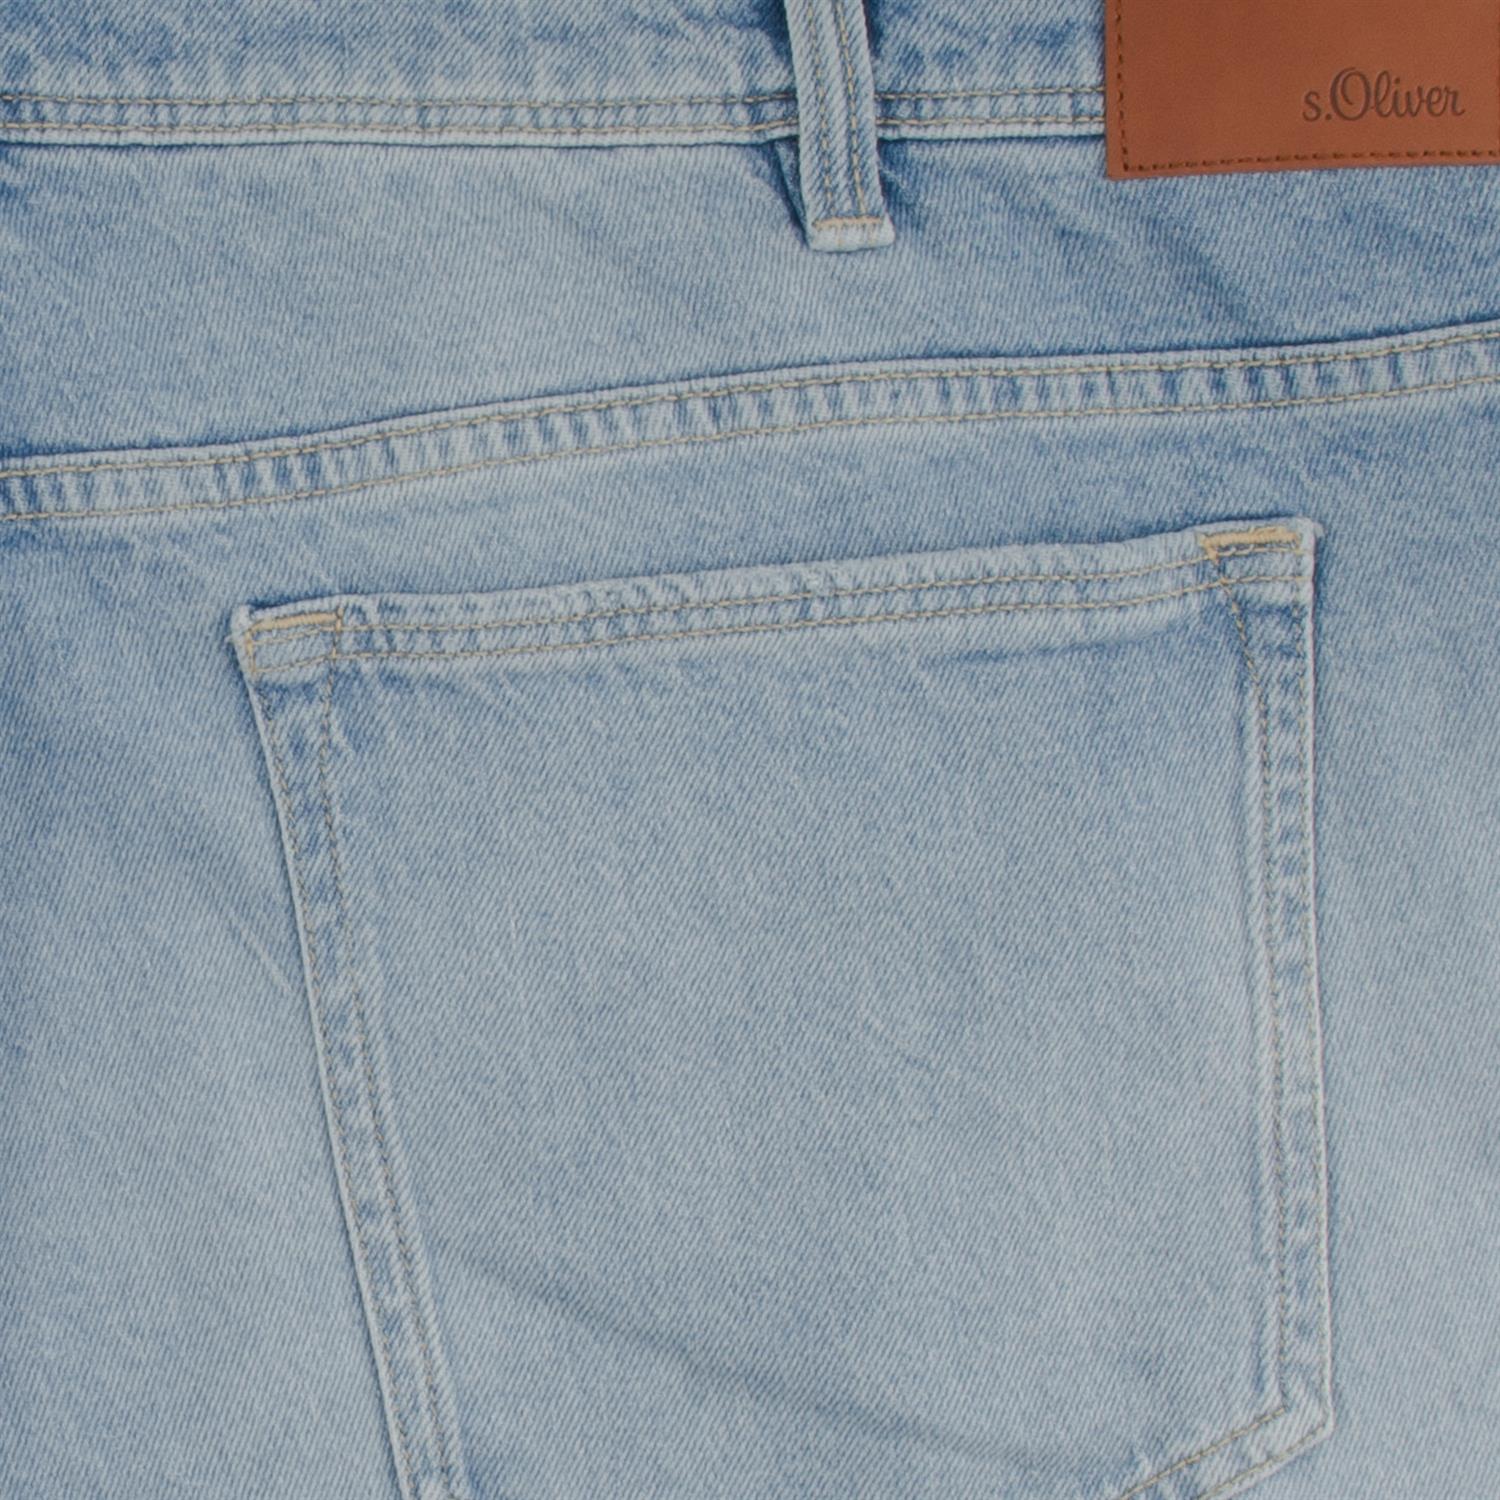 hellblau Jeans S.OLIVER kaufen in Herrenmode Übergrößen